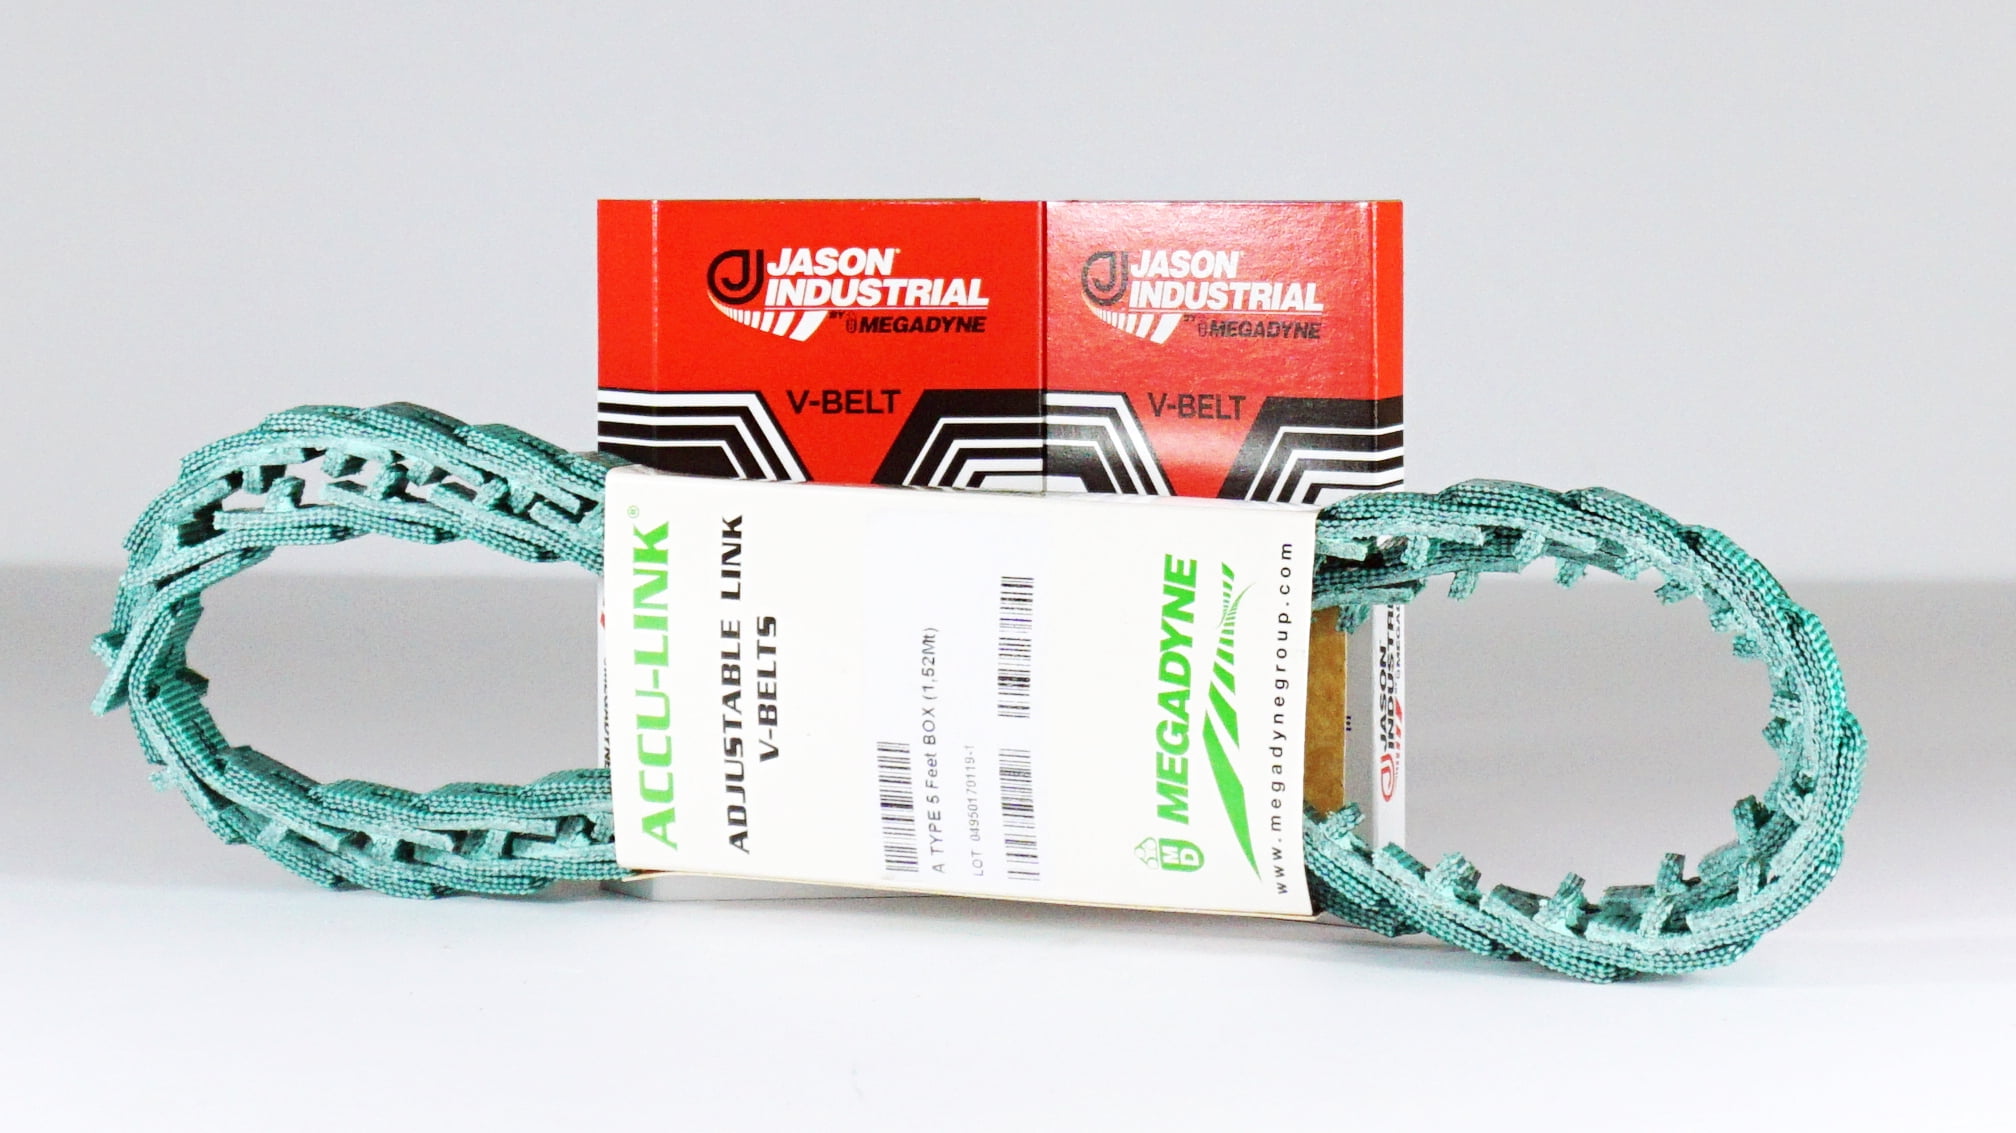 ACCU-Link 1/2"  Adjustable V belt Jason Industrial-Per Foot Size A 